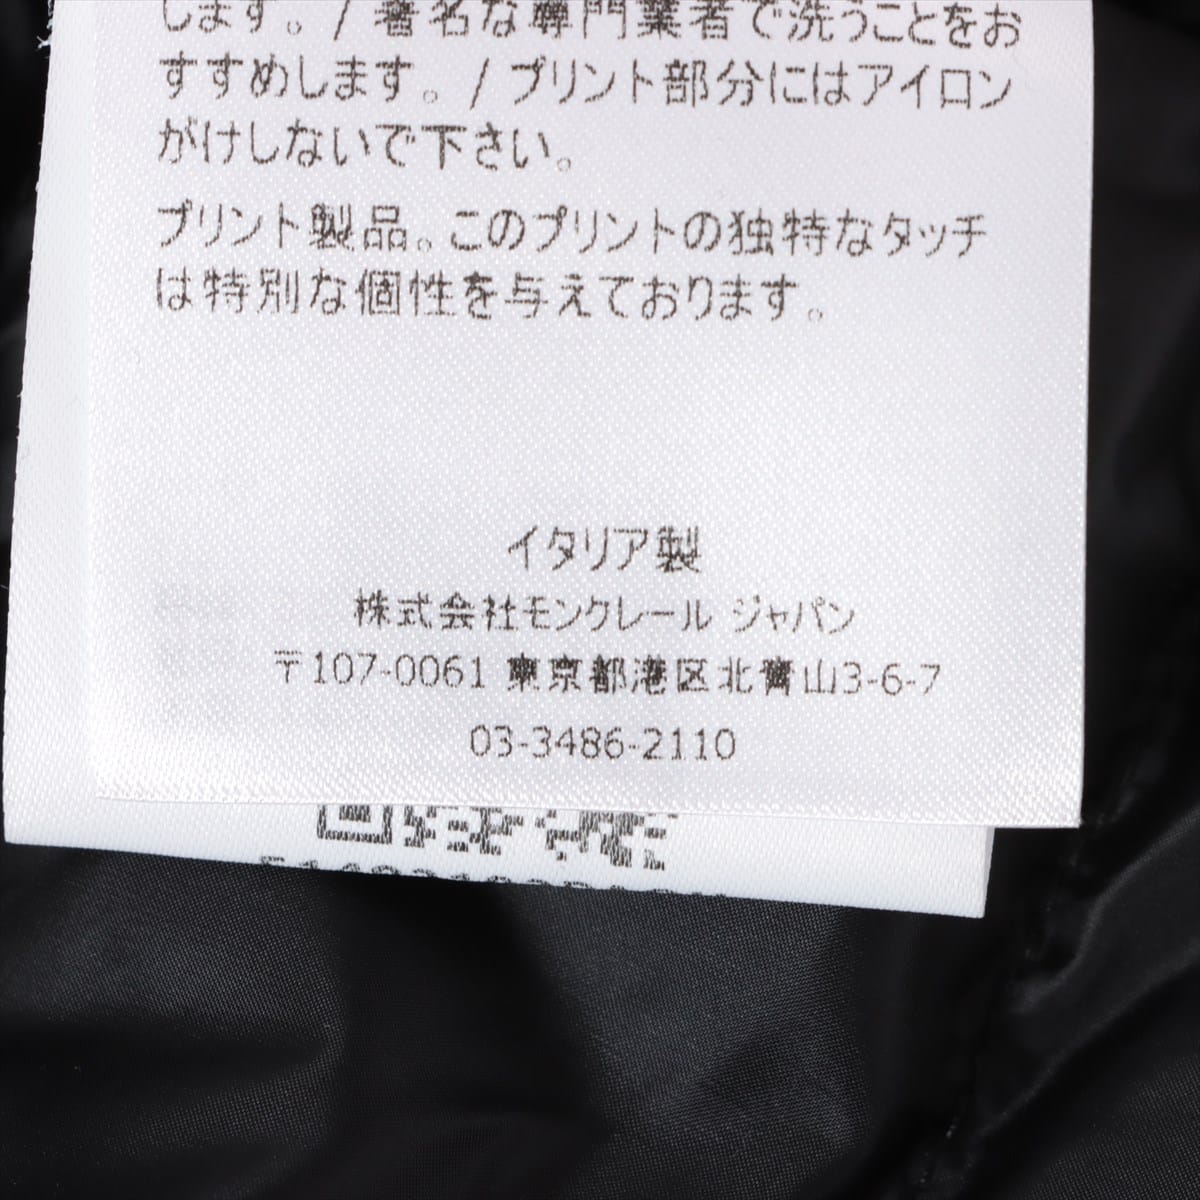 Moncler Genius Fragment 20 years Nylon Down jacket 2 Men's Black  MAZEN HIROSHI FUJIWARA